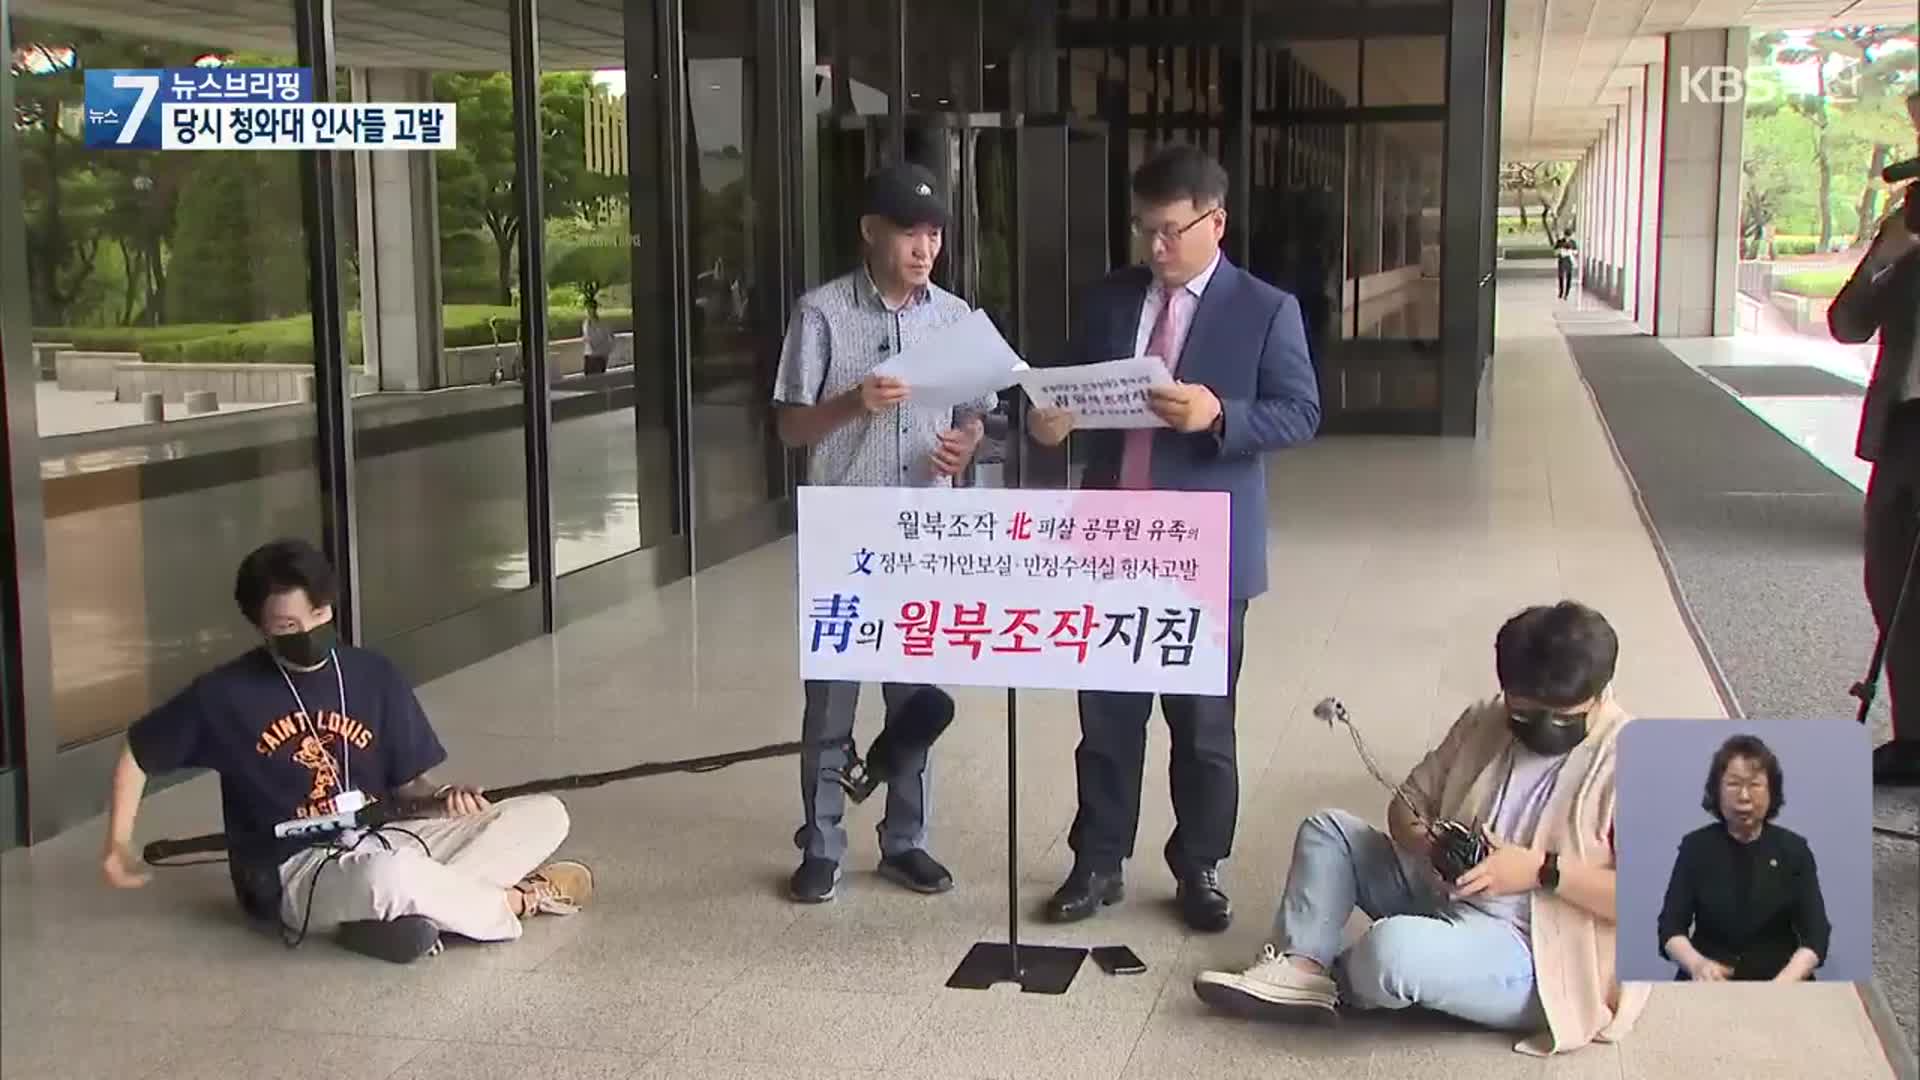 ‘피살 공무원’ 유족, 서훈 등 직권남용 혐의 고발